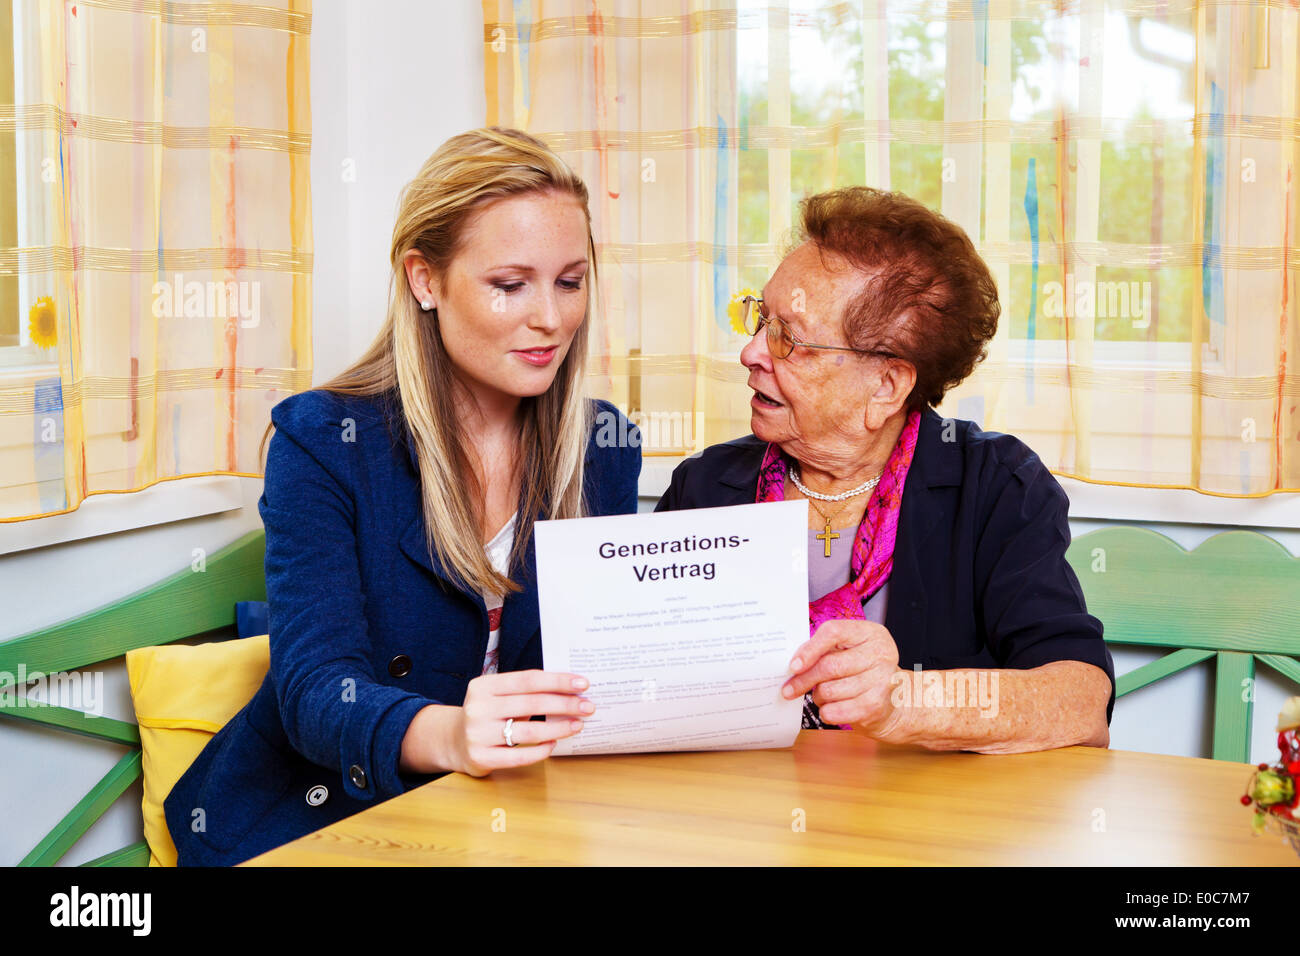 A grandson visits his grandmother and reads a generation contract., Ein Enkel besucht seine Grossmutter und liest einen Generati Stock Photo